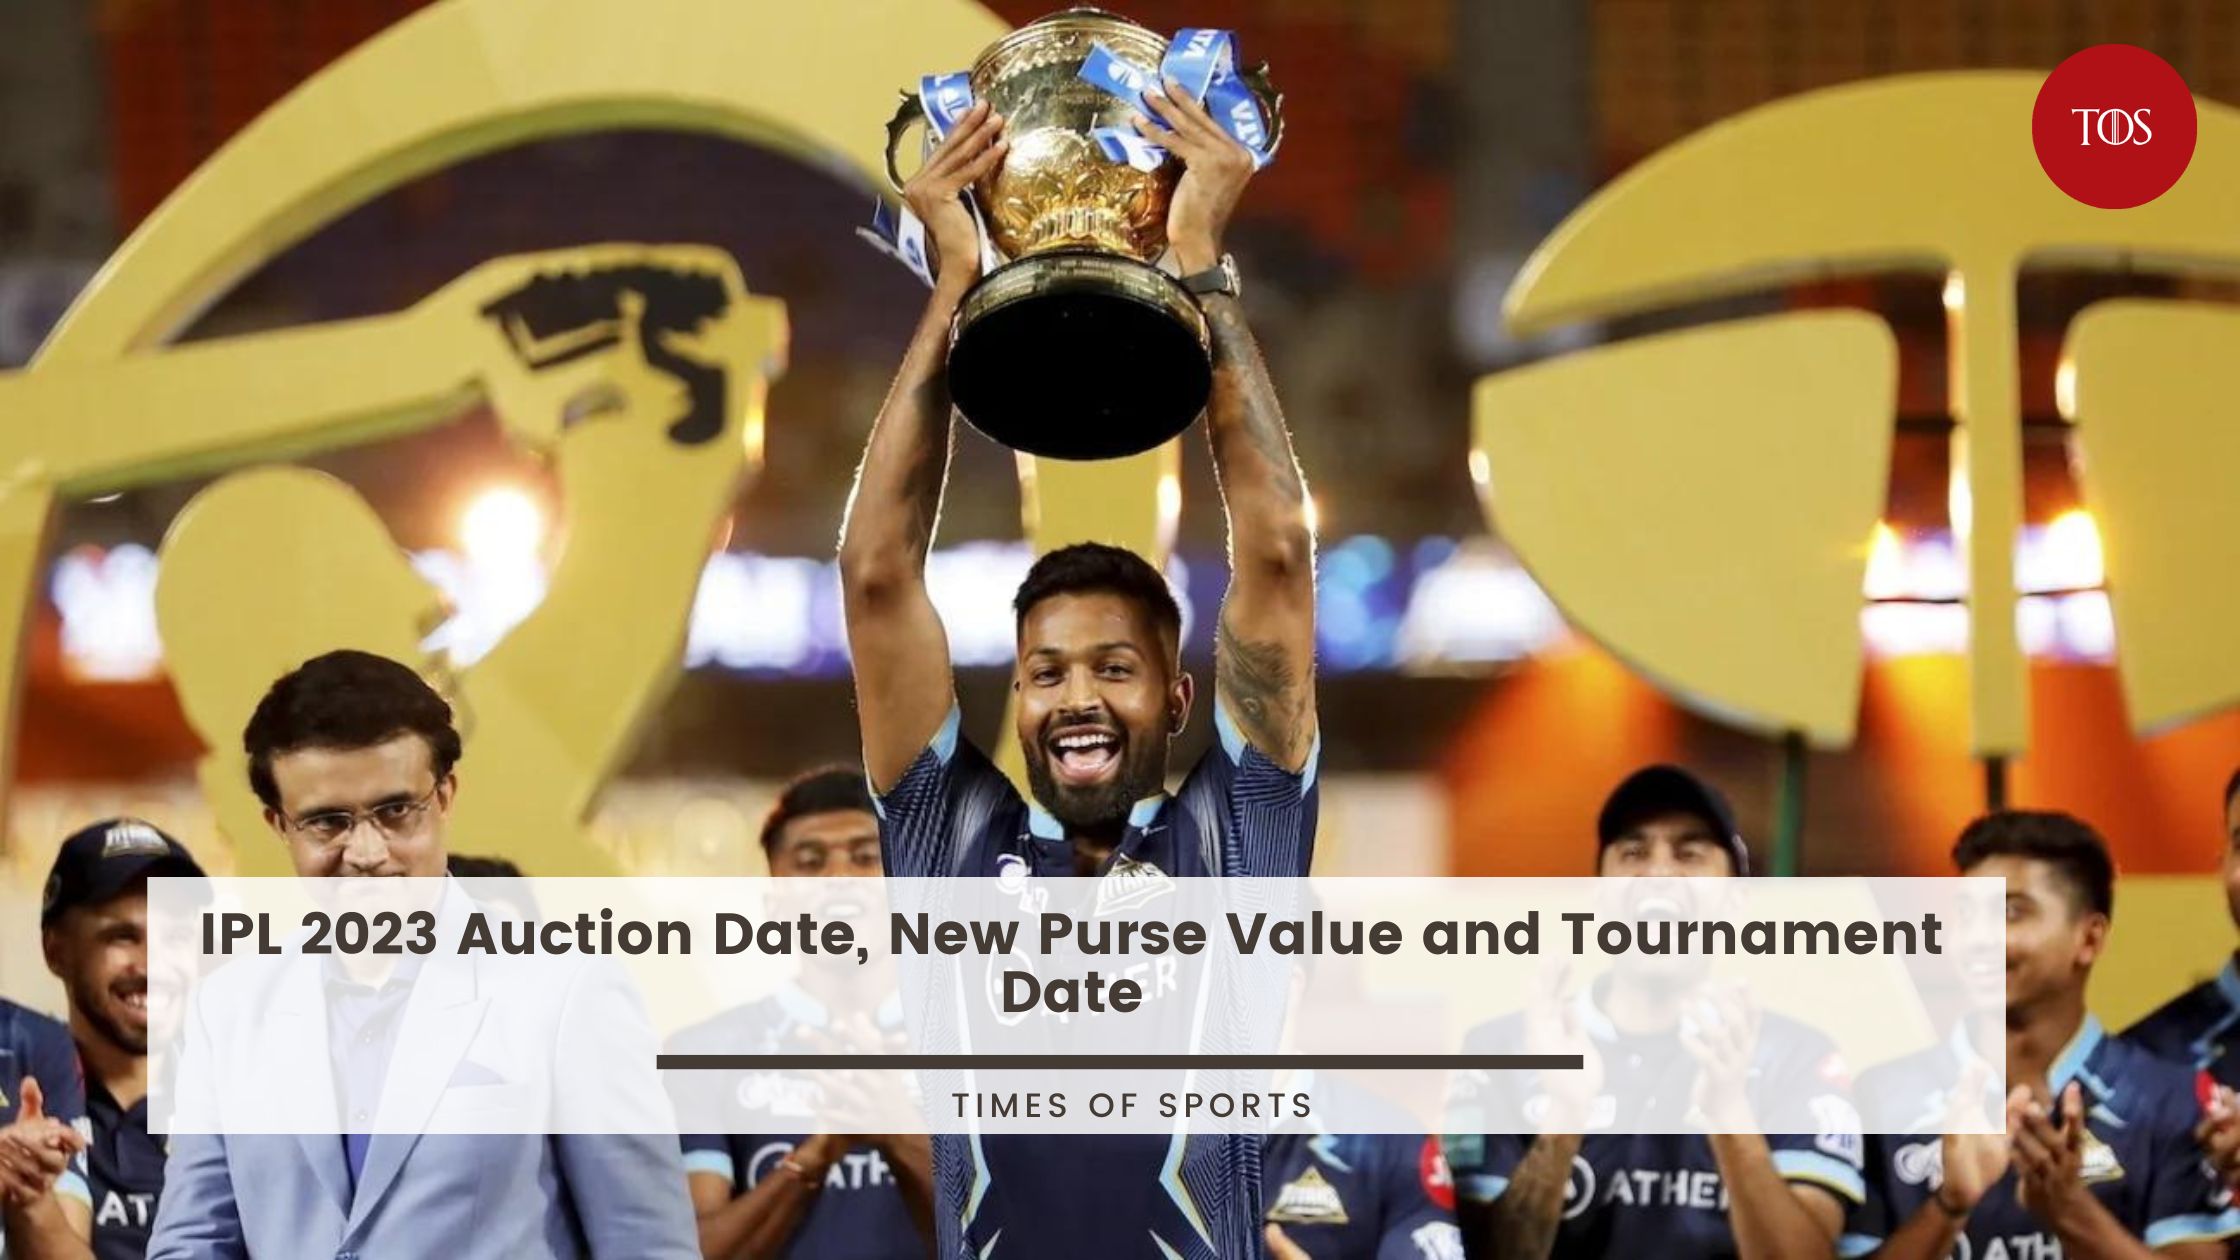 IPL 2023 remaining purse of all teams - IPL Auction 2023: किस टीम का पर्स  सबसे बड़ा, जानें किसके पास कितना पैसा 1, क्रिकेट न्यूज